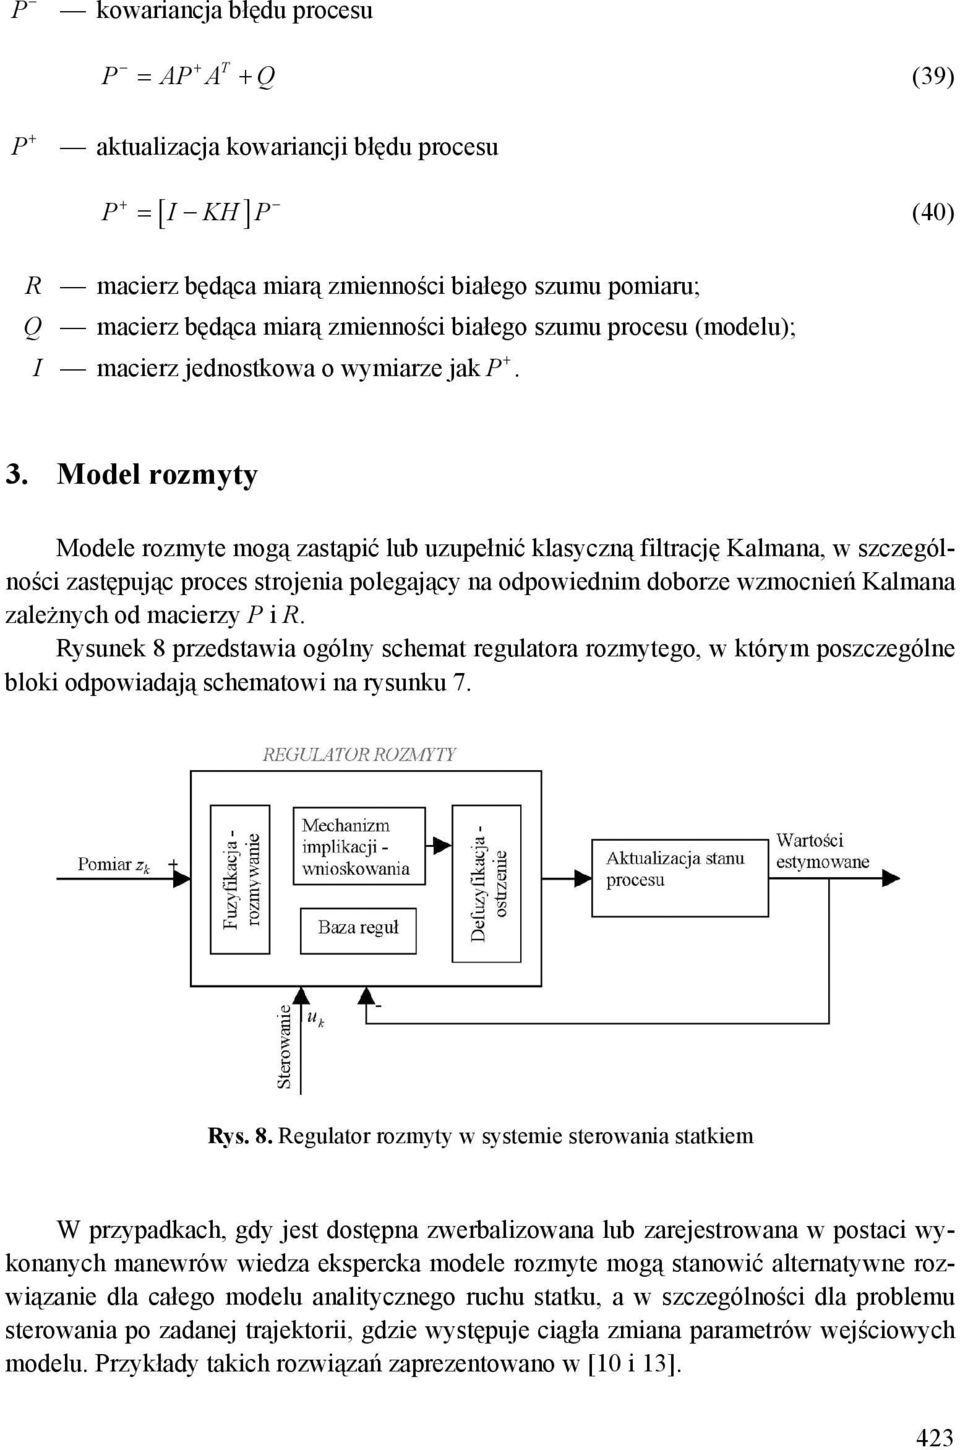 Model rozmyty Modele rozmyte mogą zastąpić lub uzupełnić klasyczną filtrację Kalmana, w szczególności zastępując proces strojenia polegający na odpowiednim doborze wzmocnień Kalmana zależnych od